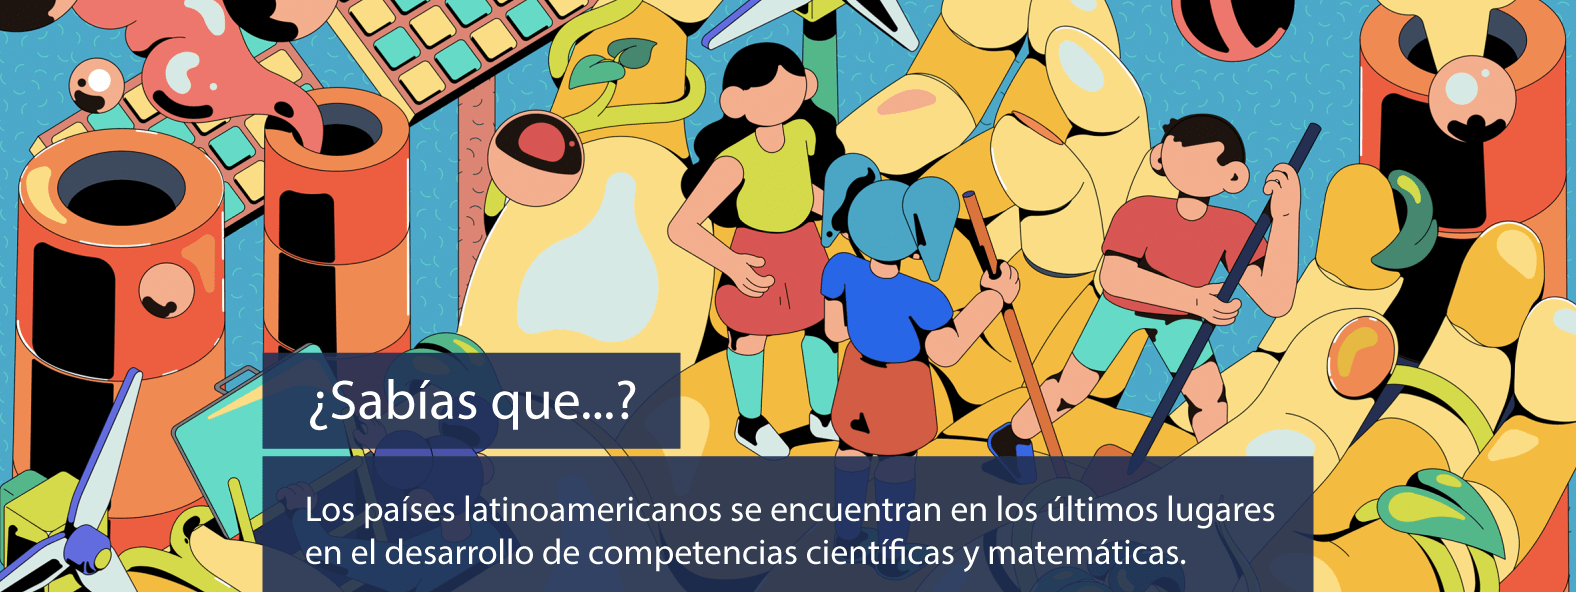 ¿Sabías que...? Los países latinoamericanos se encuentran en los últimos lugares en el desarrollo de competencias científicas y matemáticas.